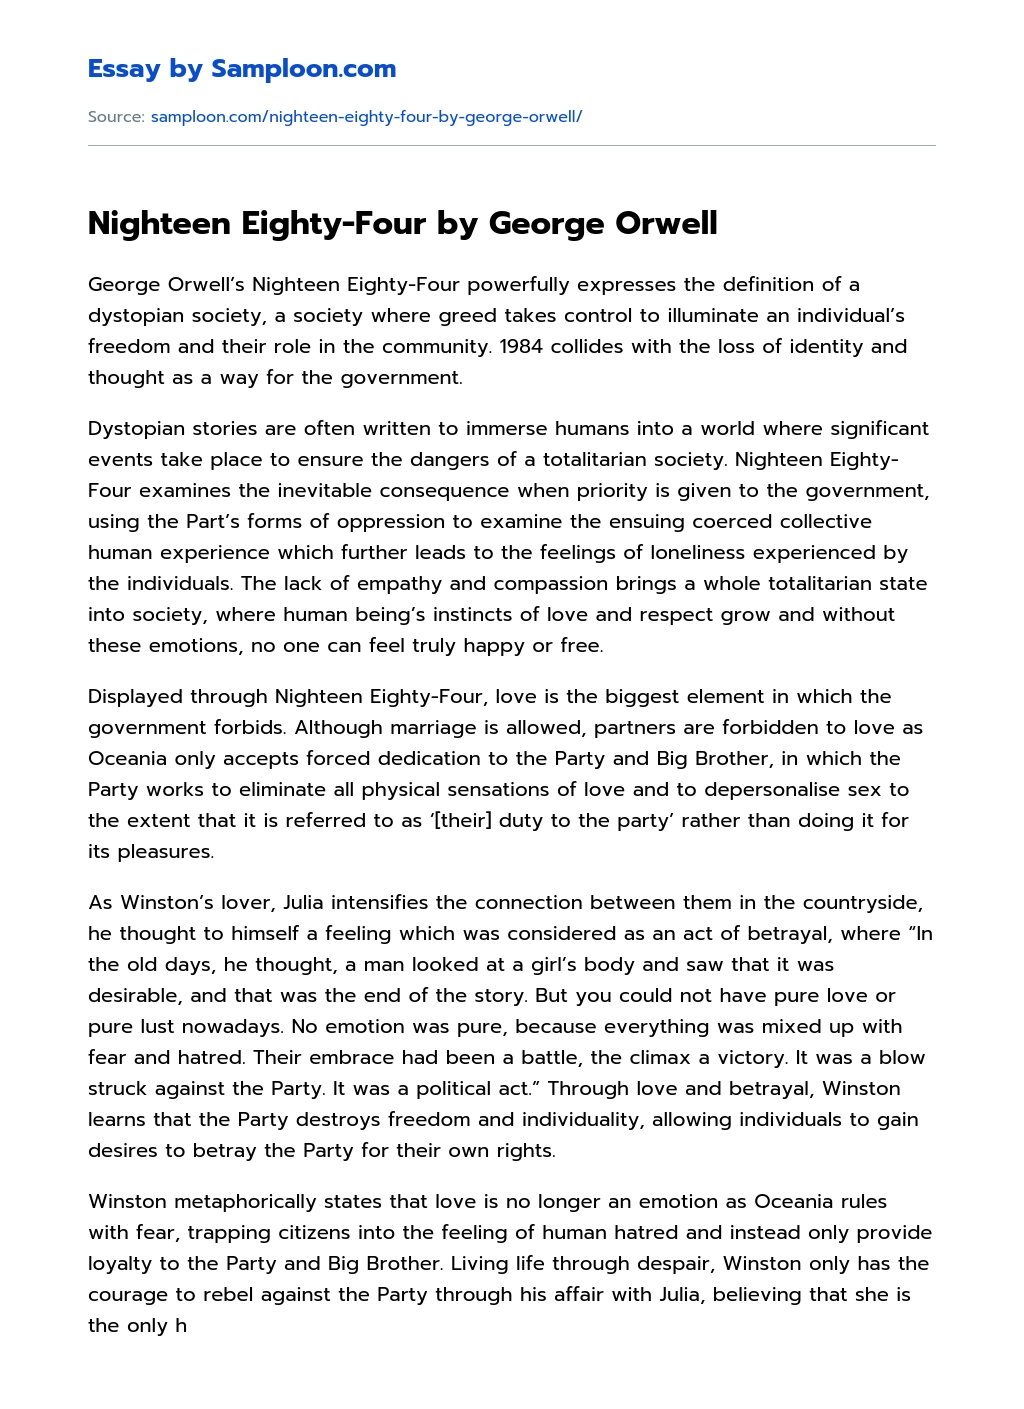 Nighteen Eighty-Four by George Orwell Argumentative Essay essay